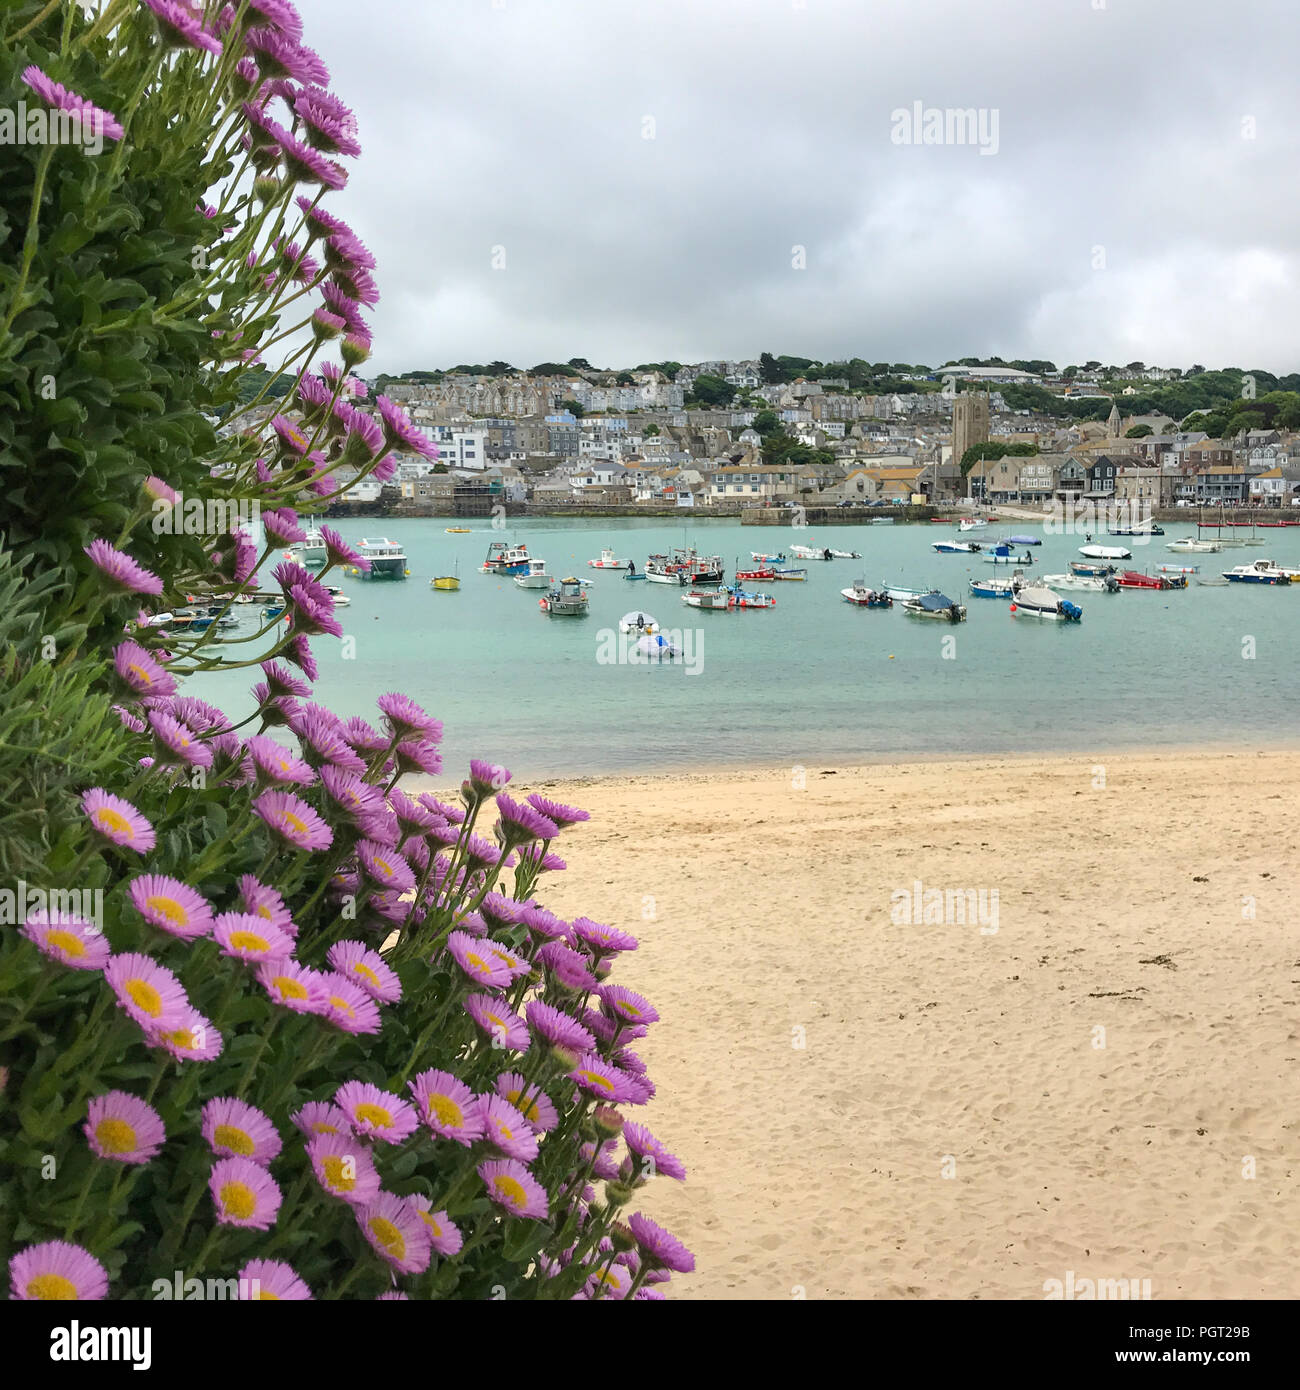 St. Ives, ENGLAND - Juni 20: Blumen im Vordergrund der einen schönen Blick auf Strand und Hafen von St. Ives. In St Ives, Cornwall, England. Am 20. Juni, 20. Stockfoto